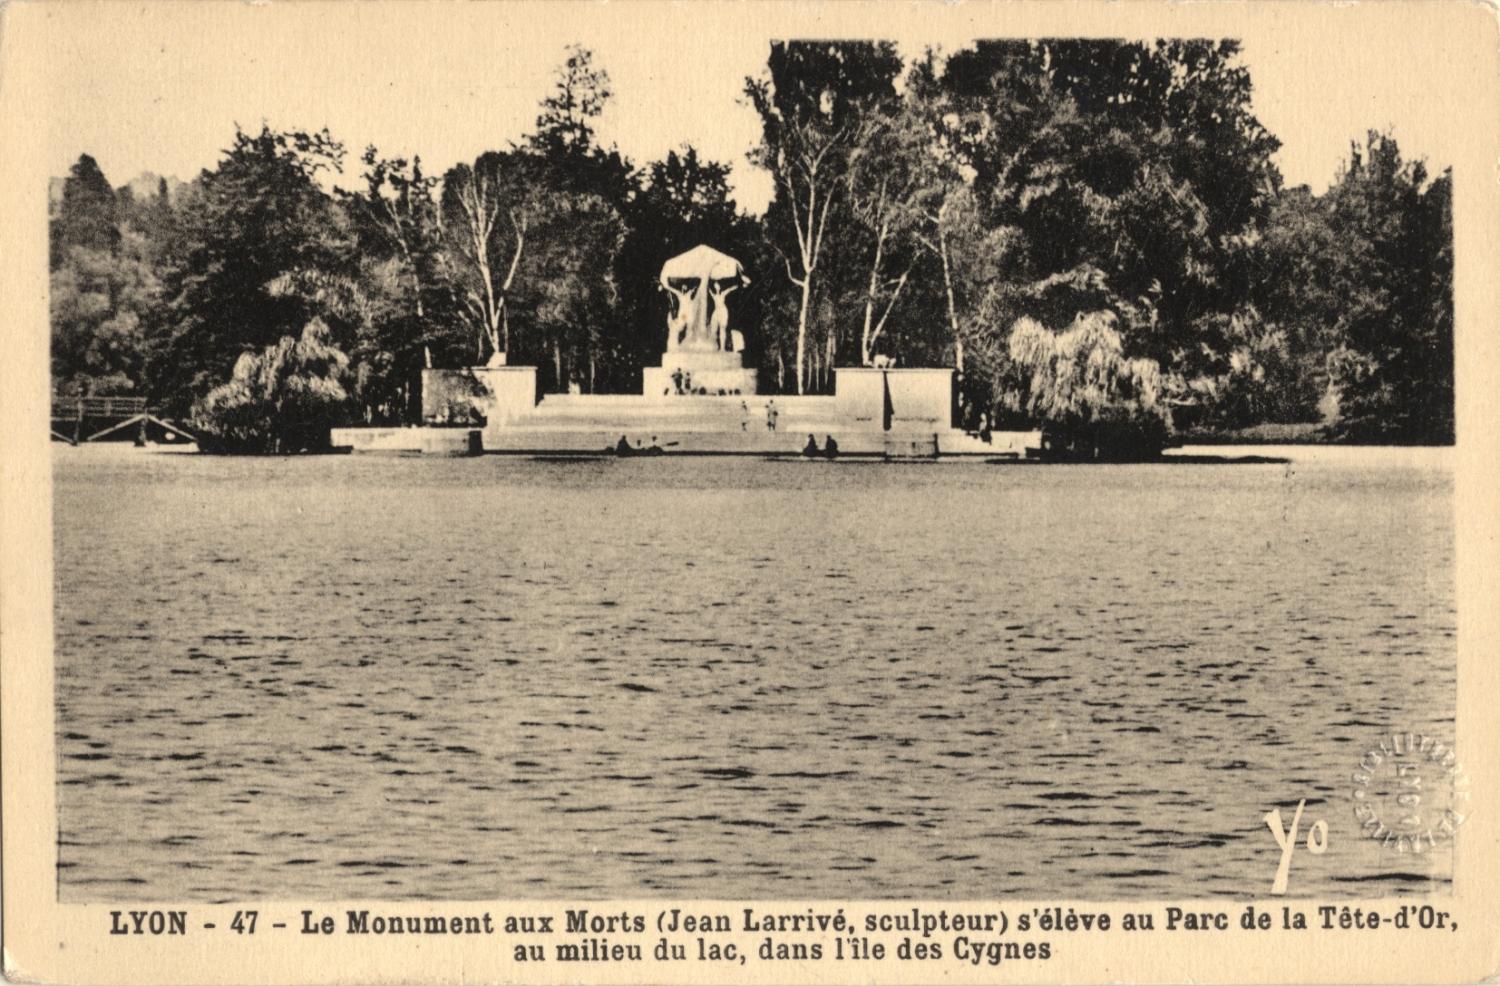 Lyon : Le Monument aux Morts (Jean Larrivé, sculpteur) s'élève au Parc de la Tête-d'Or, au milieu du lac, dans l'île des cygnes.